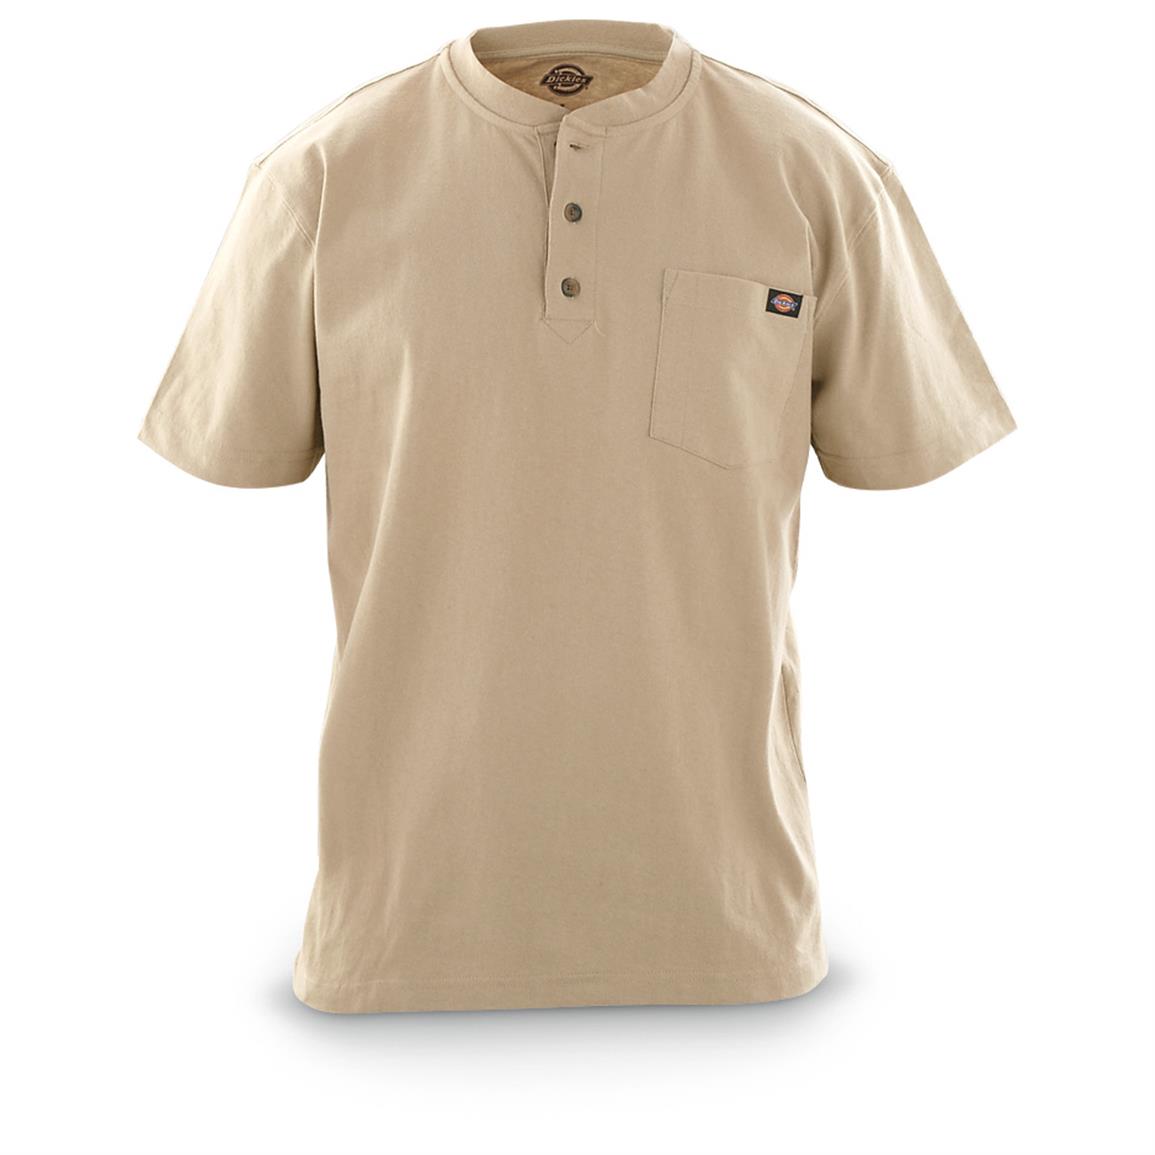 2-Pk. of Dickies Irregular Pocket Henley Shirts - 637840, T-Shirts at ...